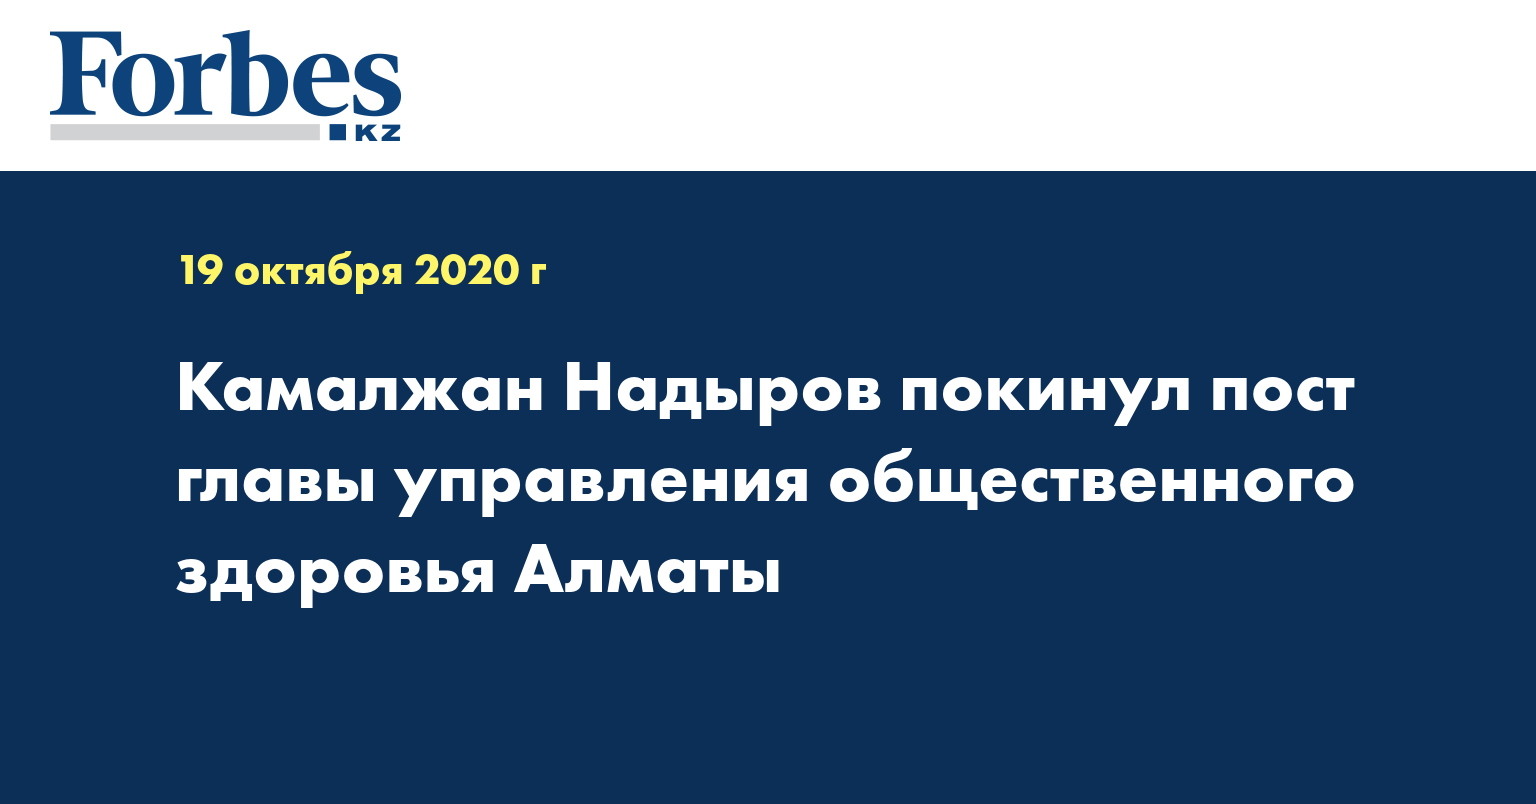 Камалжан Надыров покинул пост главы управления общественного здоровья Алматы